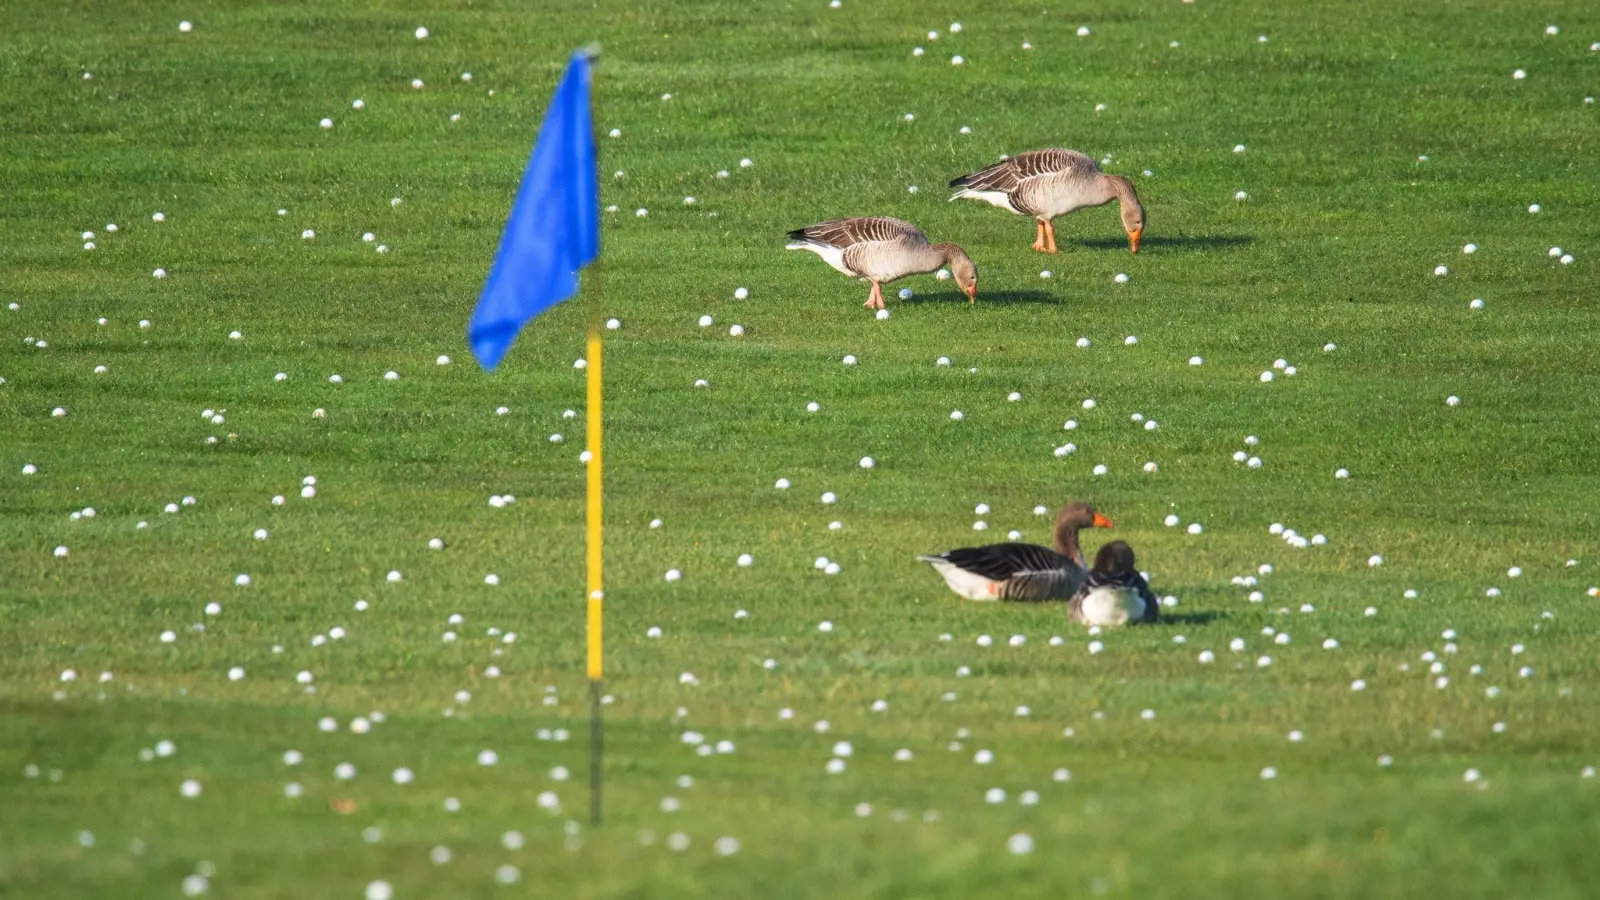 Die Graugänse fühlen sich schon mal wohl - bald sollen sich mehr Vögel und Insekten auf Golfplätzen tummeln. (Foto: Julian Stratenschulte/dpa)